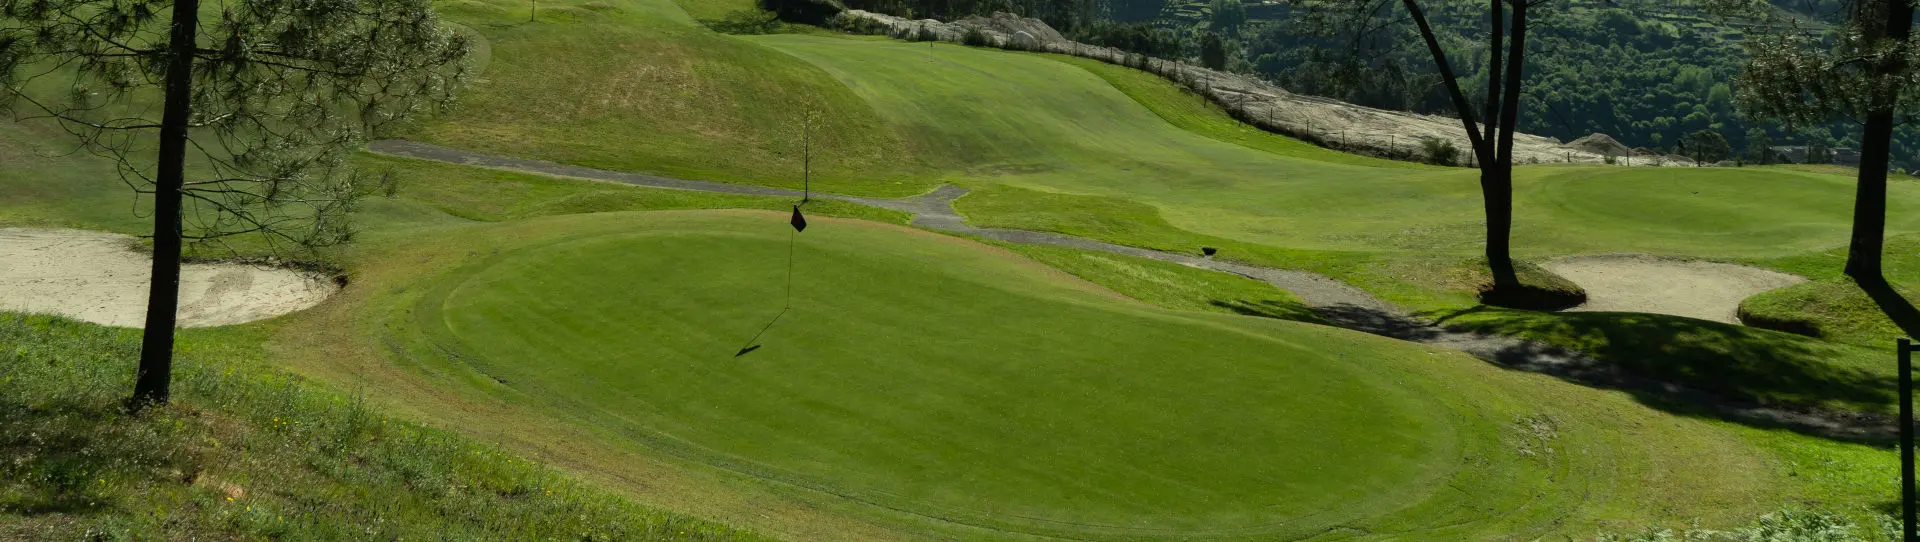 Portugal golf courses - Amarante - Photo 1